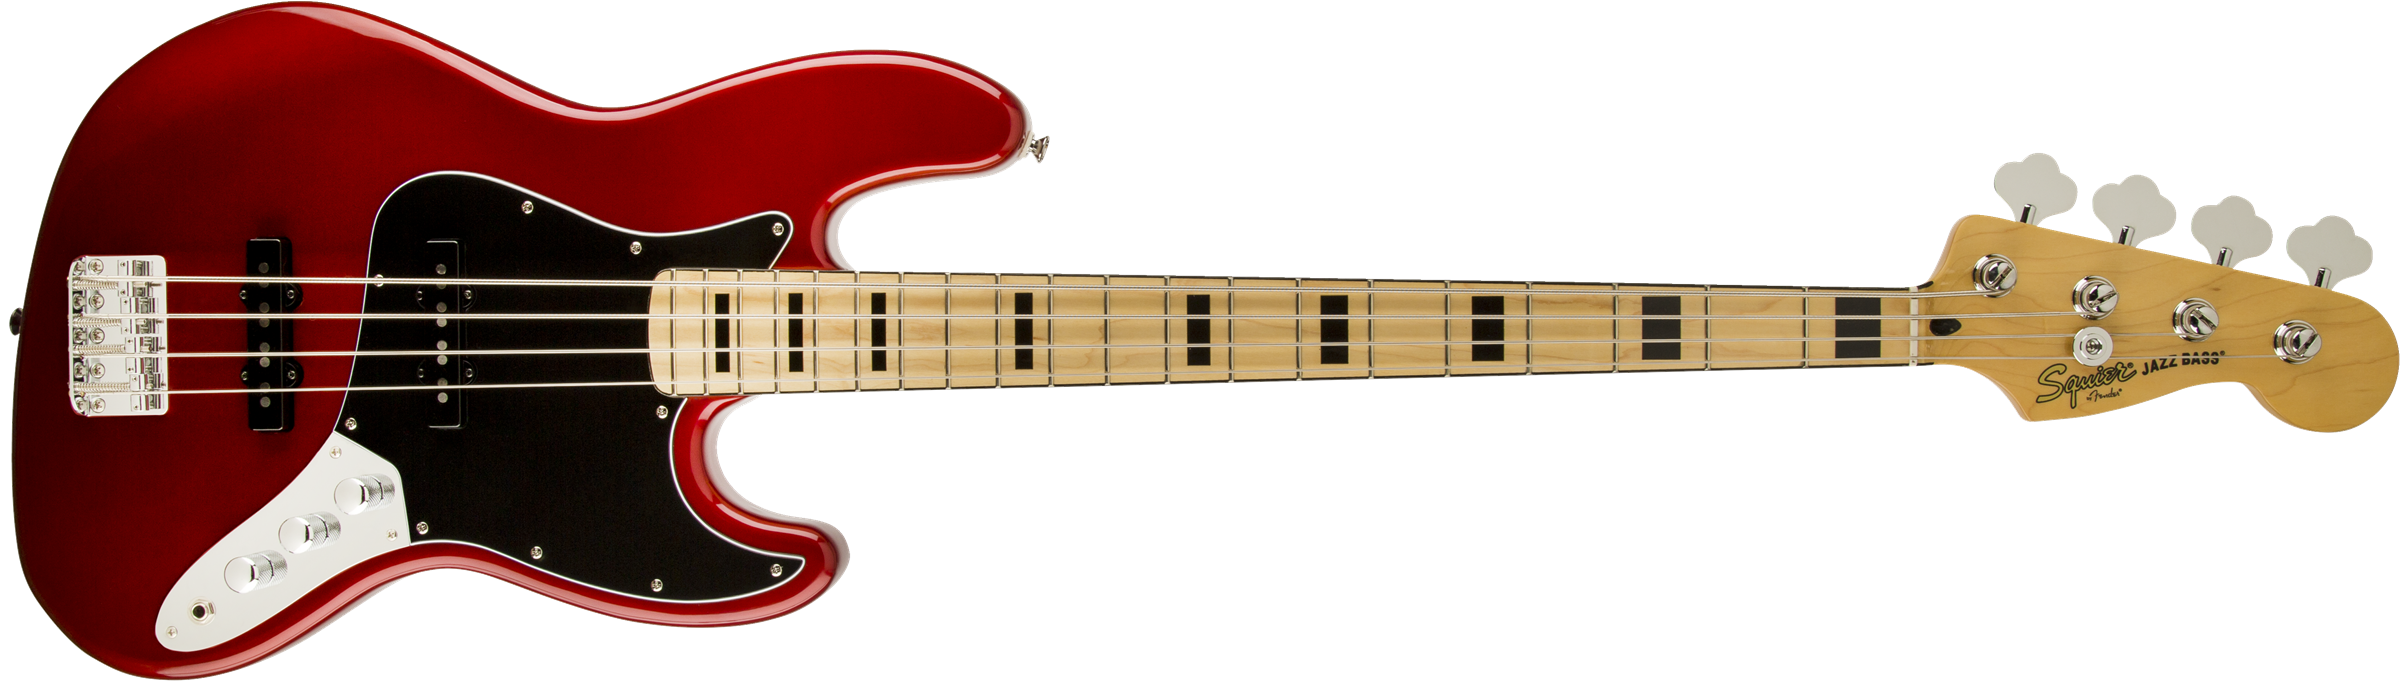 Крас бас. Bass Guitar Fender Jazz Bass. Красная бас гитара Фендер. Бас гитара Фендер джаз бас. Fender Precision 70's.